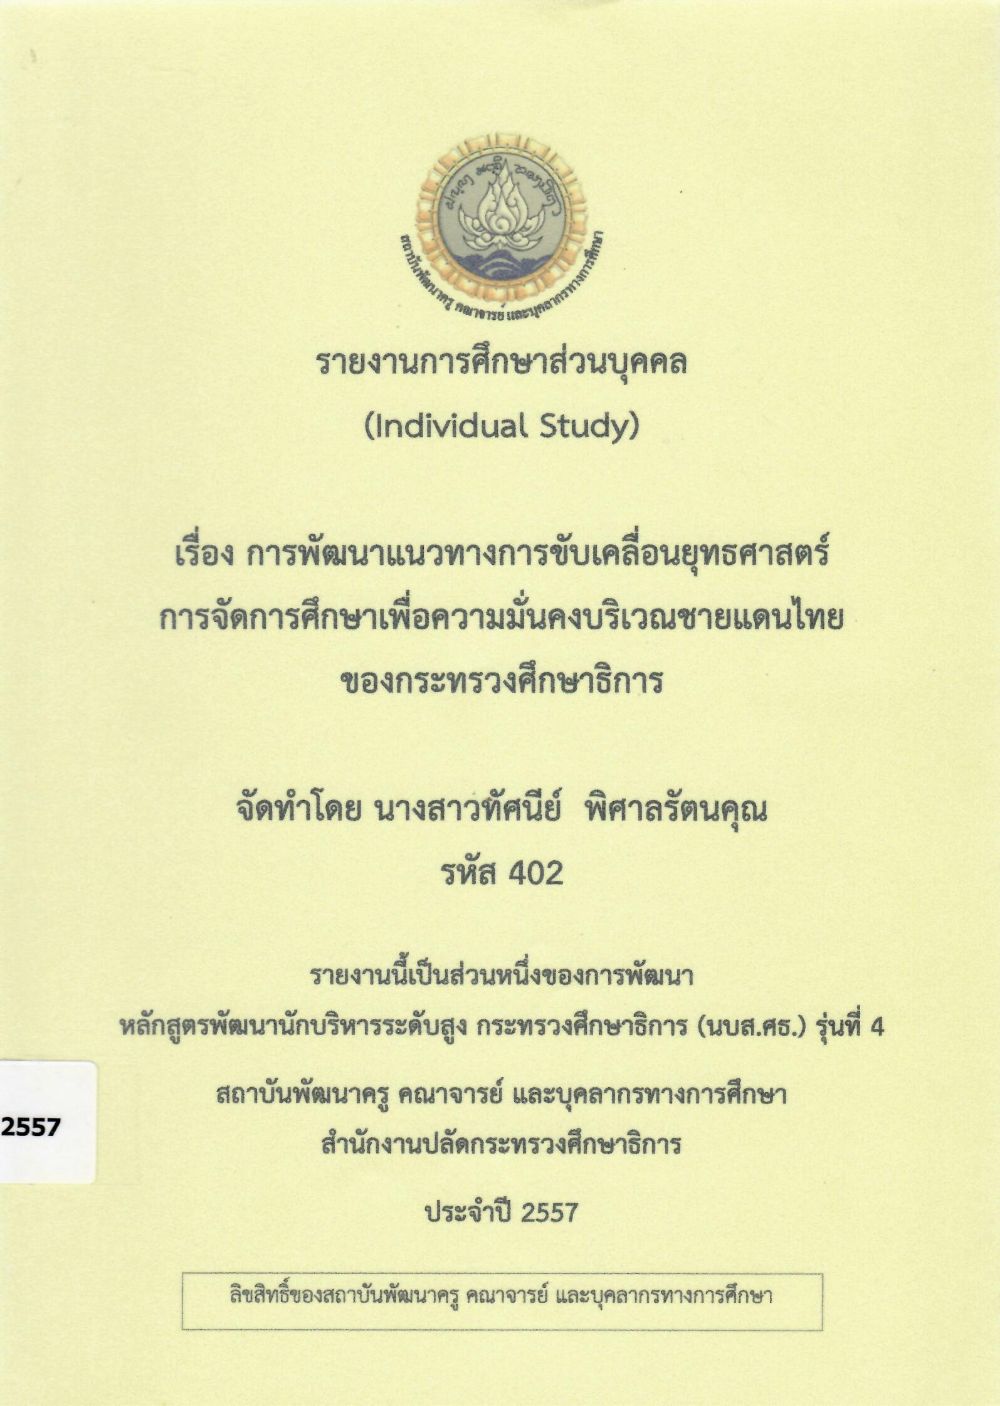 การพัฒนาแนวทางการขับเคลื่อนยุทธศาสตร์ การจัดการศึกษาเพื่อความมั่นคงบริเวณชายแดนไทยของกระทรวงศึกษาธิการ: รายงานการศึกษาส่วนบุคคล (Individual Study)/ ทัศนีย์ พิศาลรัตนคุณ